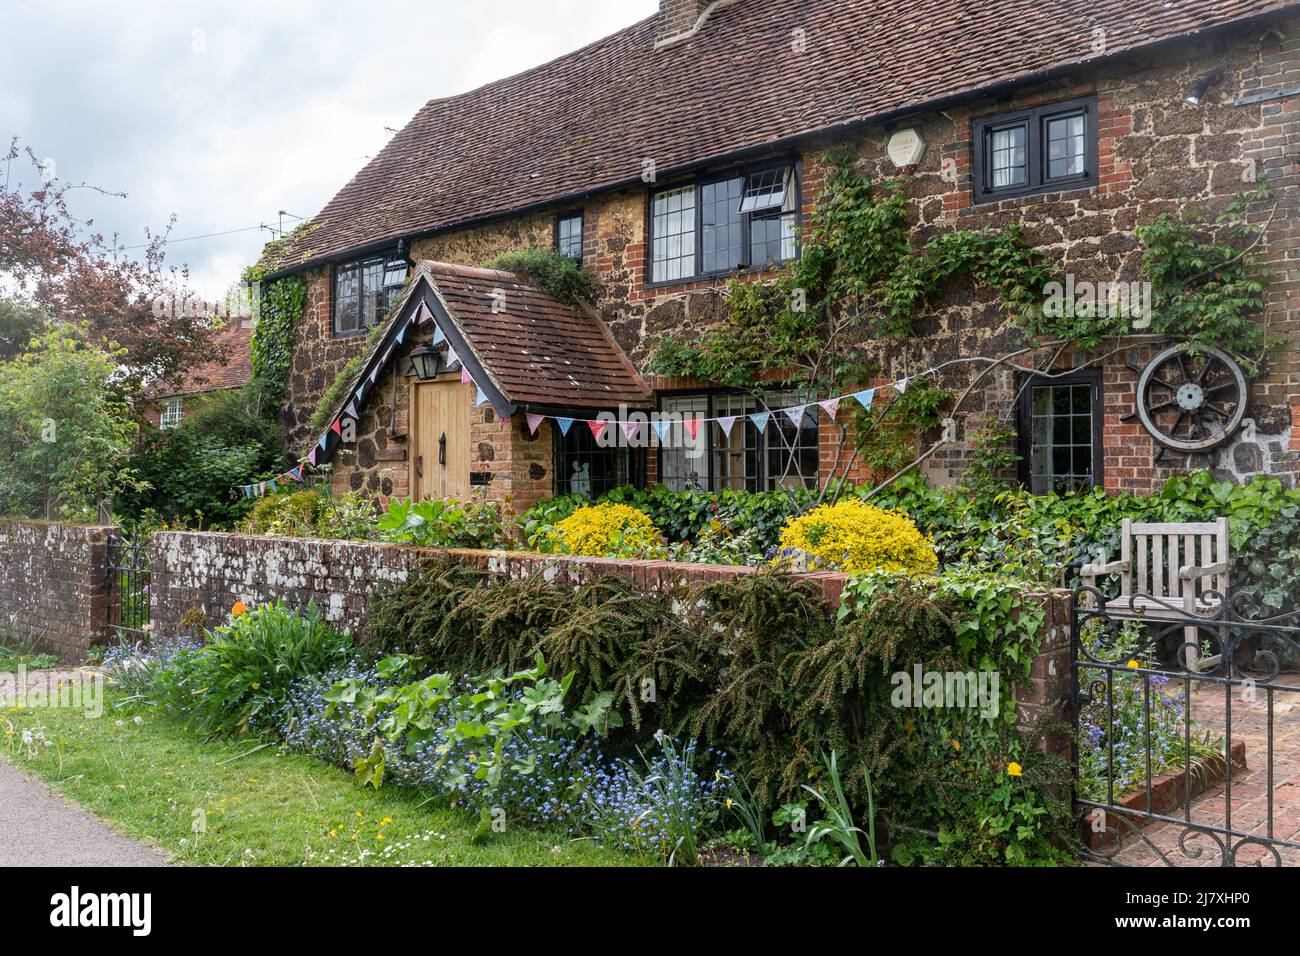 Beau cottage appelé Wheelwrights dans le village de Dunsfold, Surrey, Angleterre, Royaume-Uni Banque D'Images